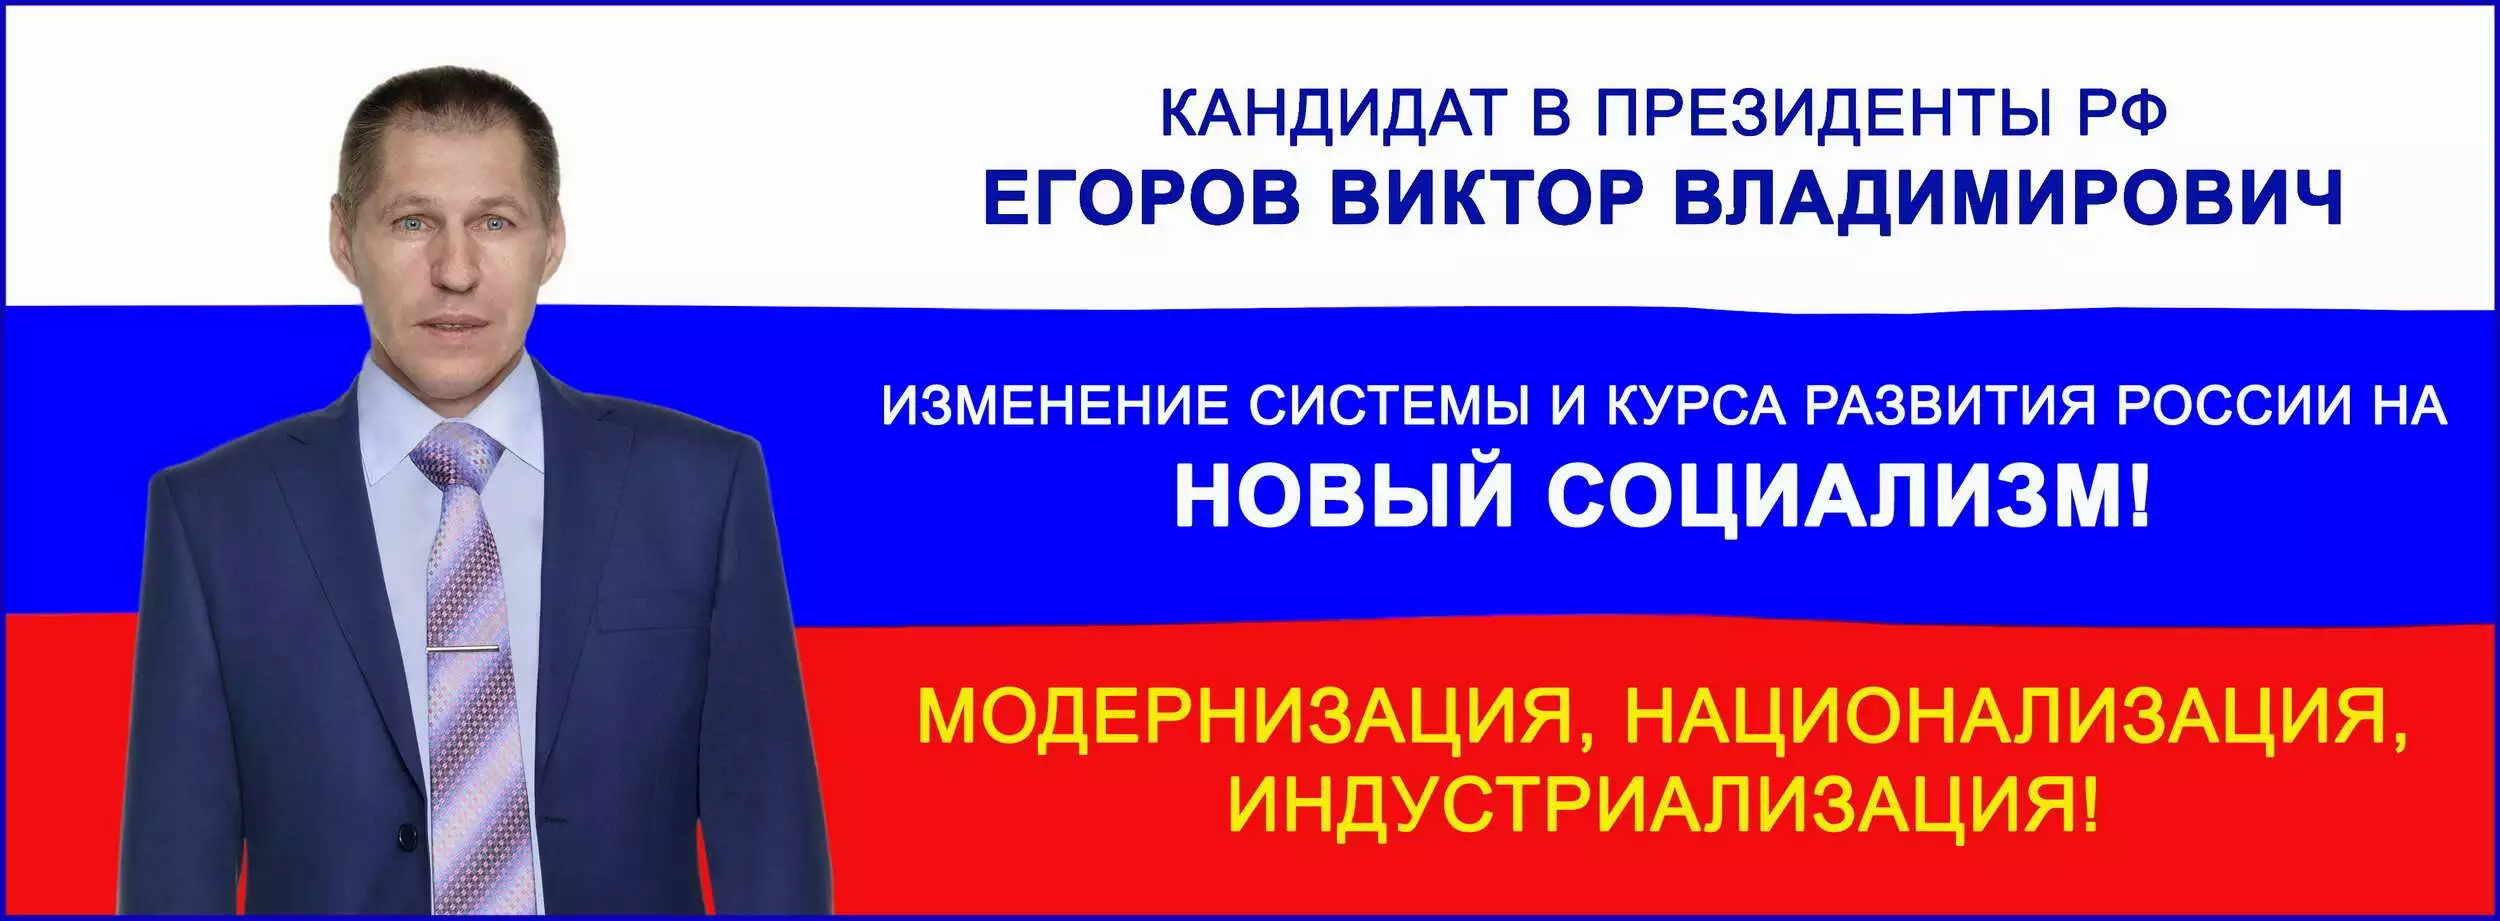 Виктор Владимирович Егоров кандидат в президенты РФ